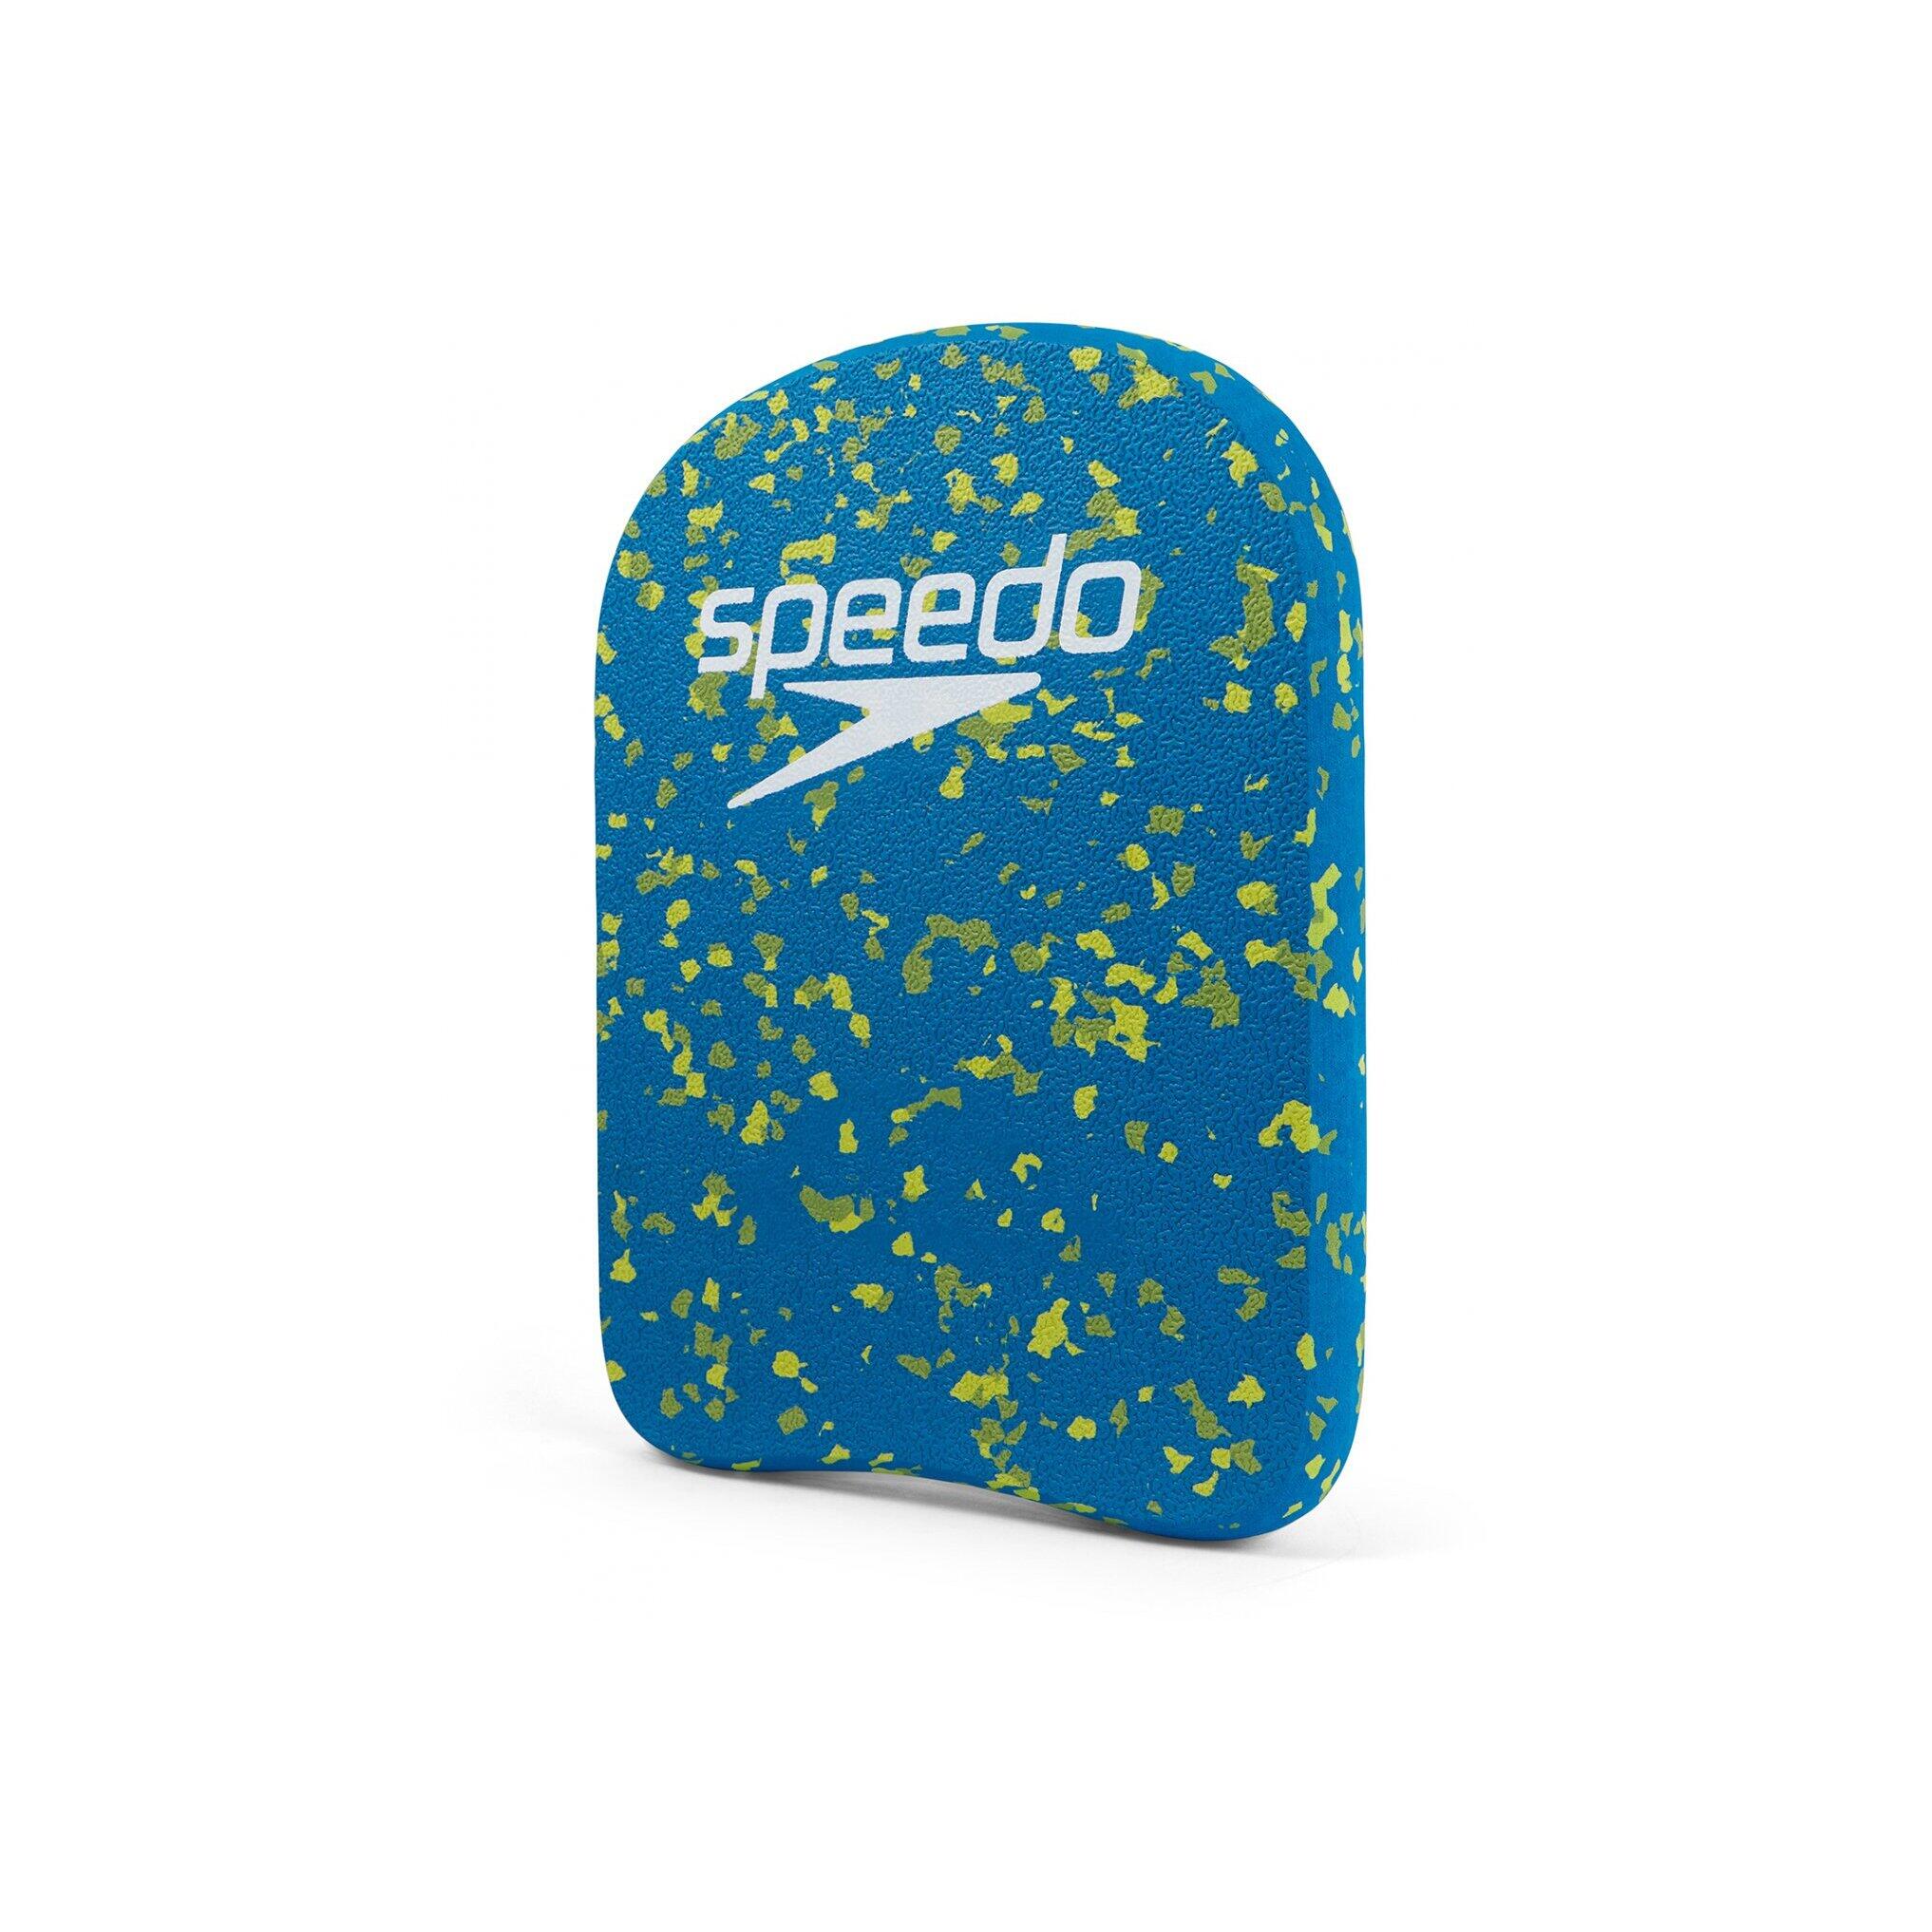 Speedo Eco Kickboard - Blue / Green 2/5